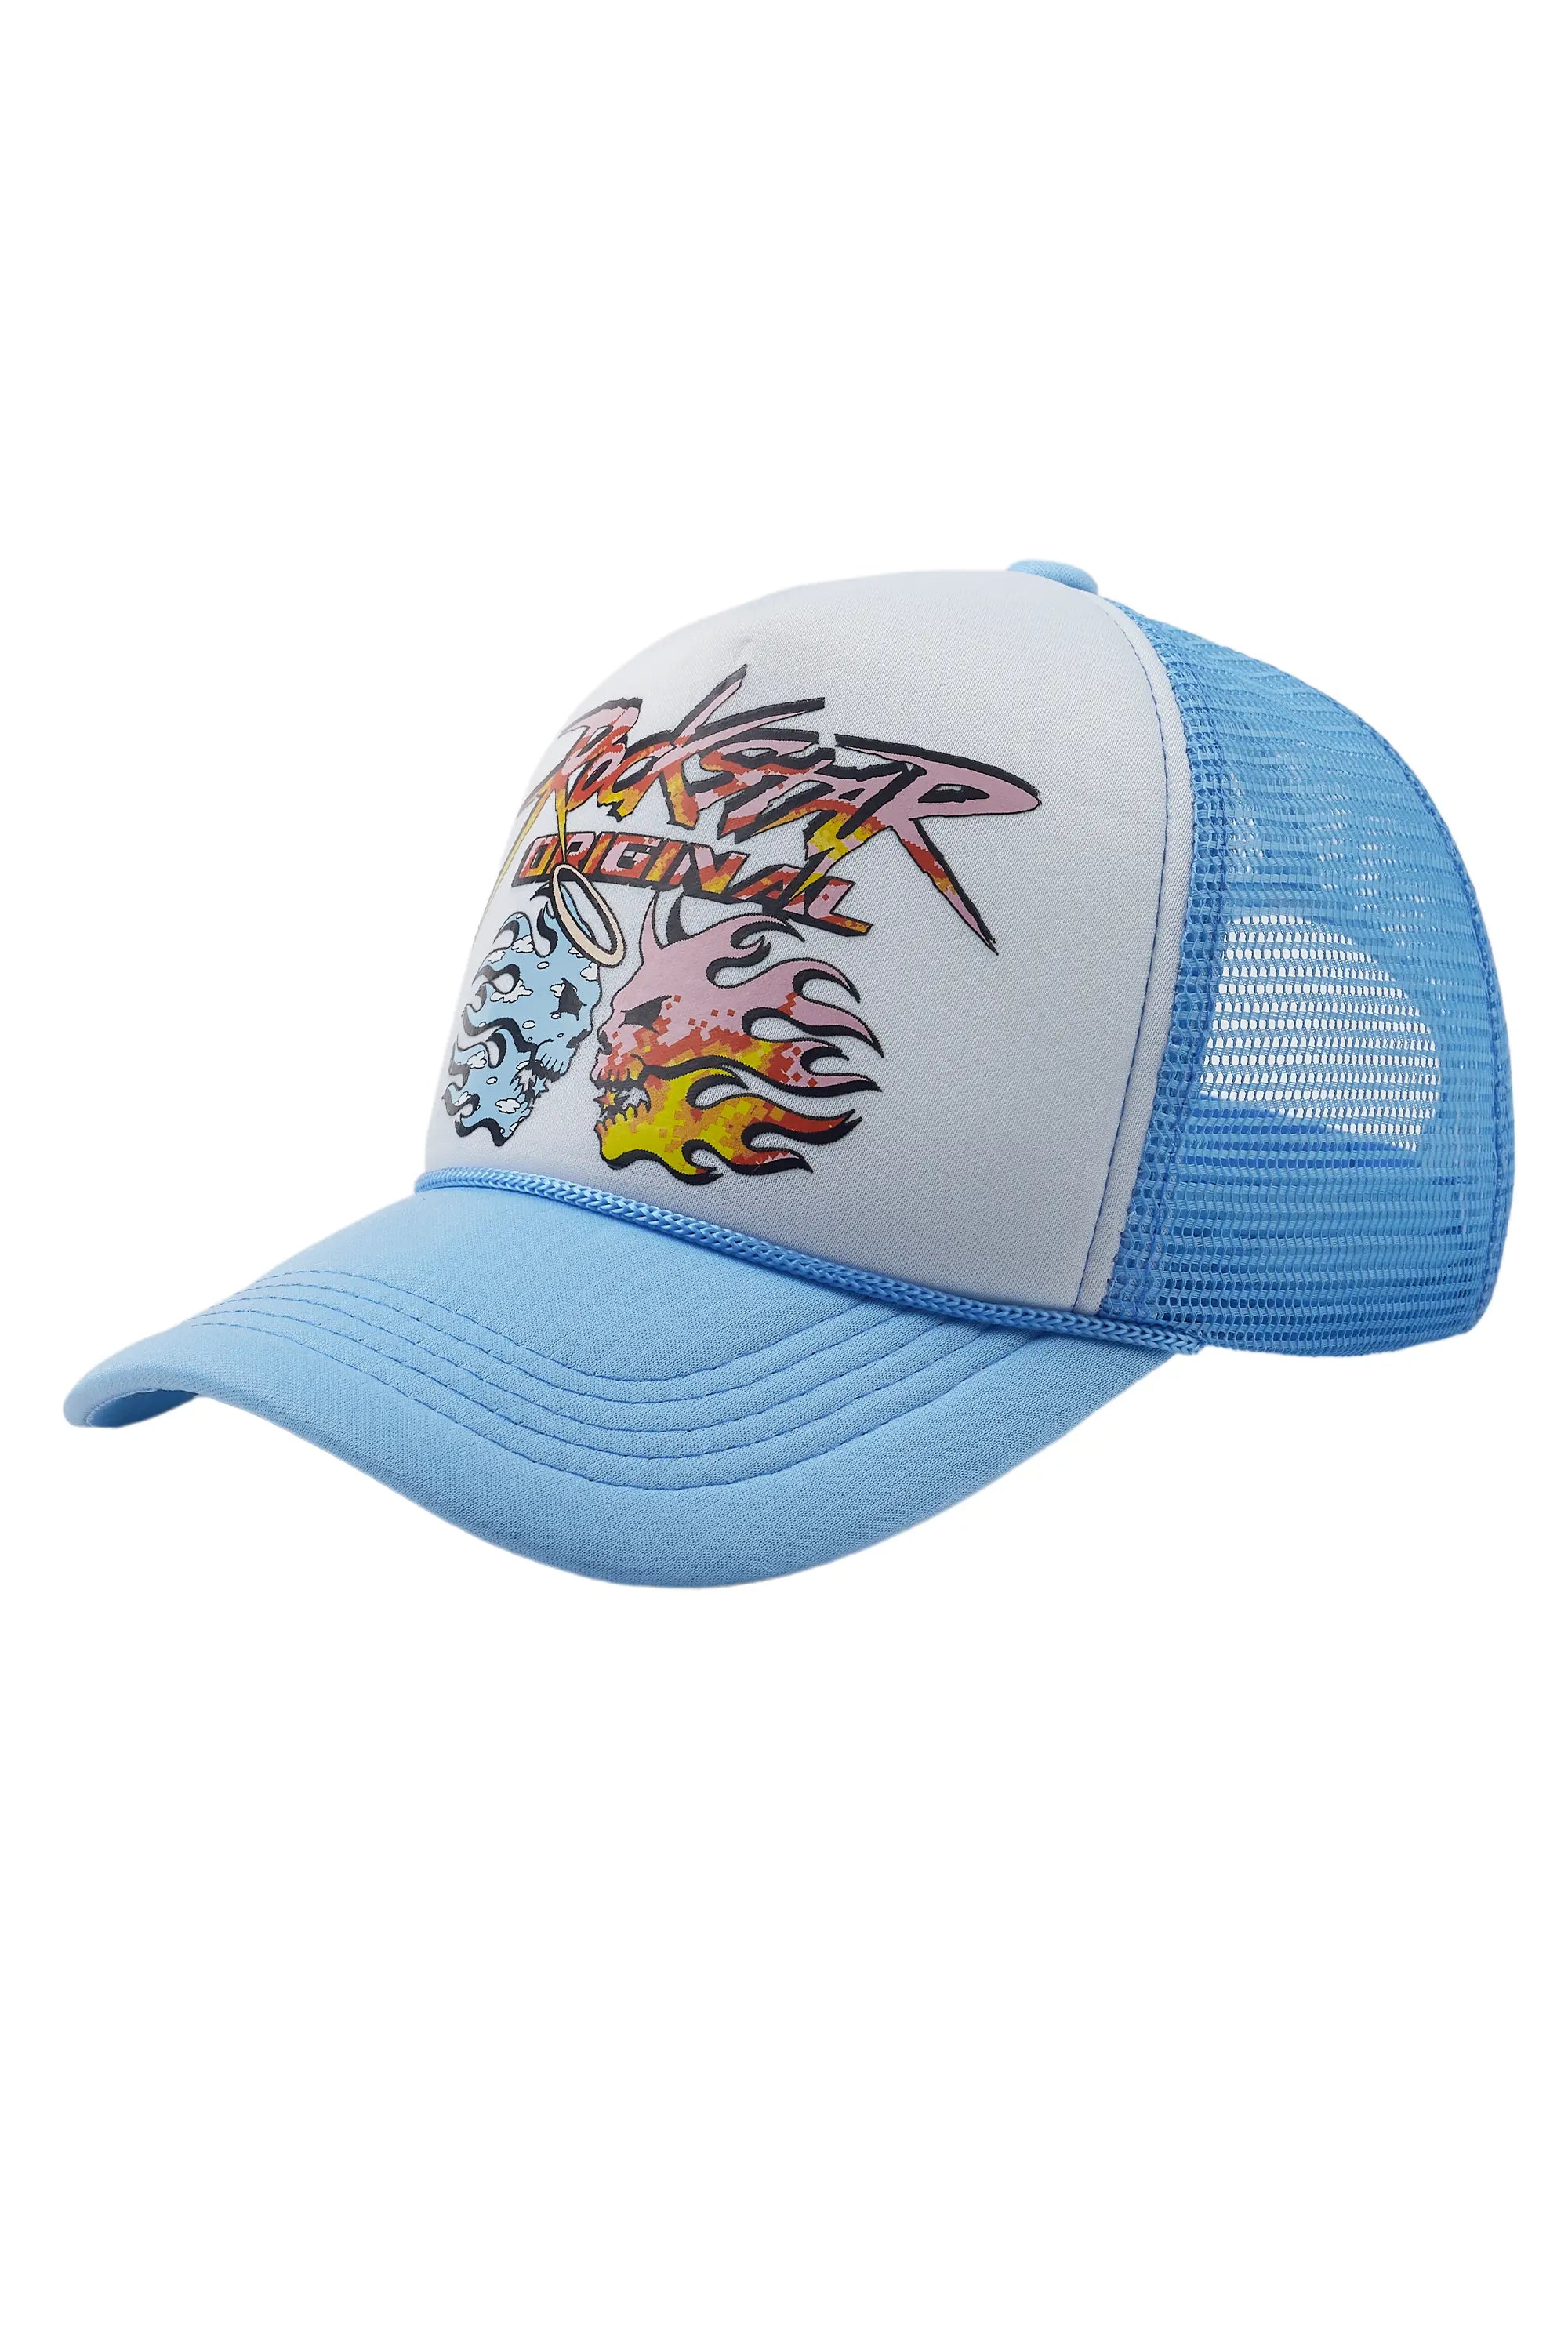 Sky White/Blue Trucker Hat